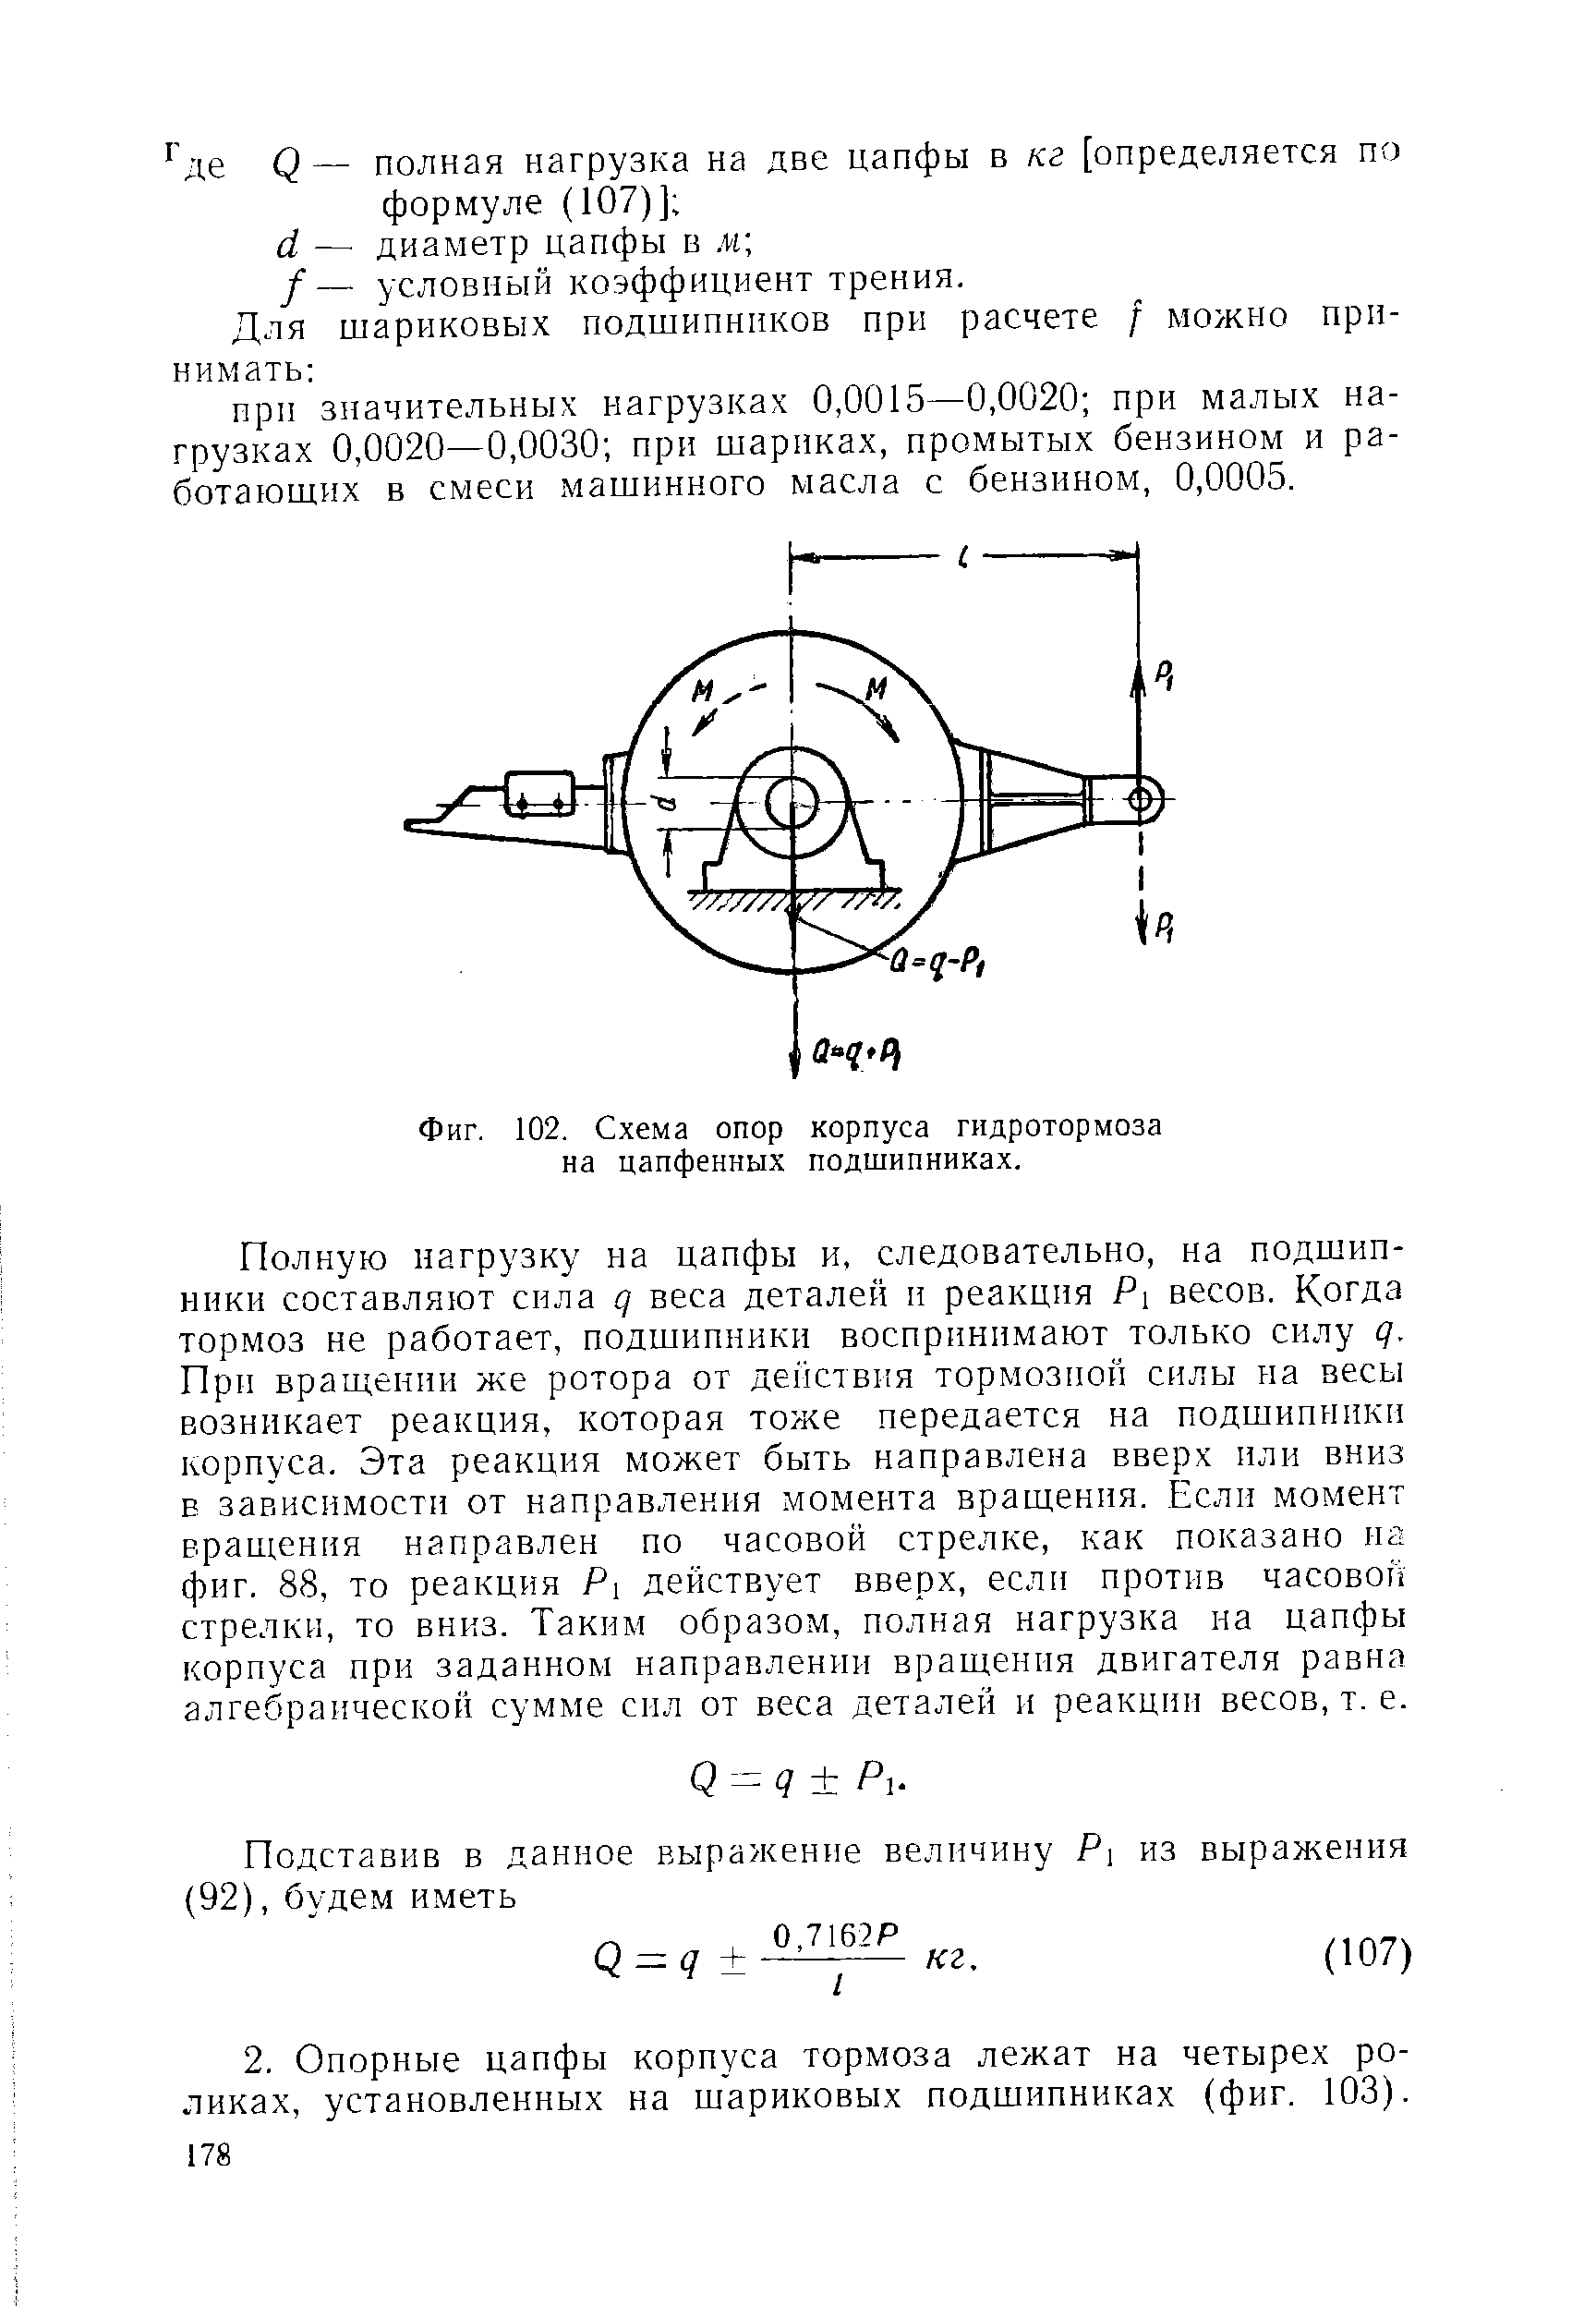 Фиг. 102. Схема опор корпуса гидротормоза на цапфенных подшипниках.
